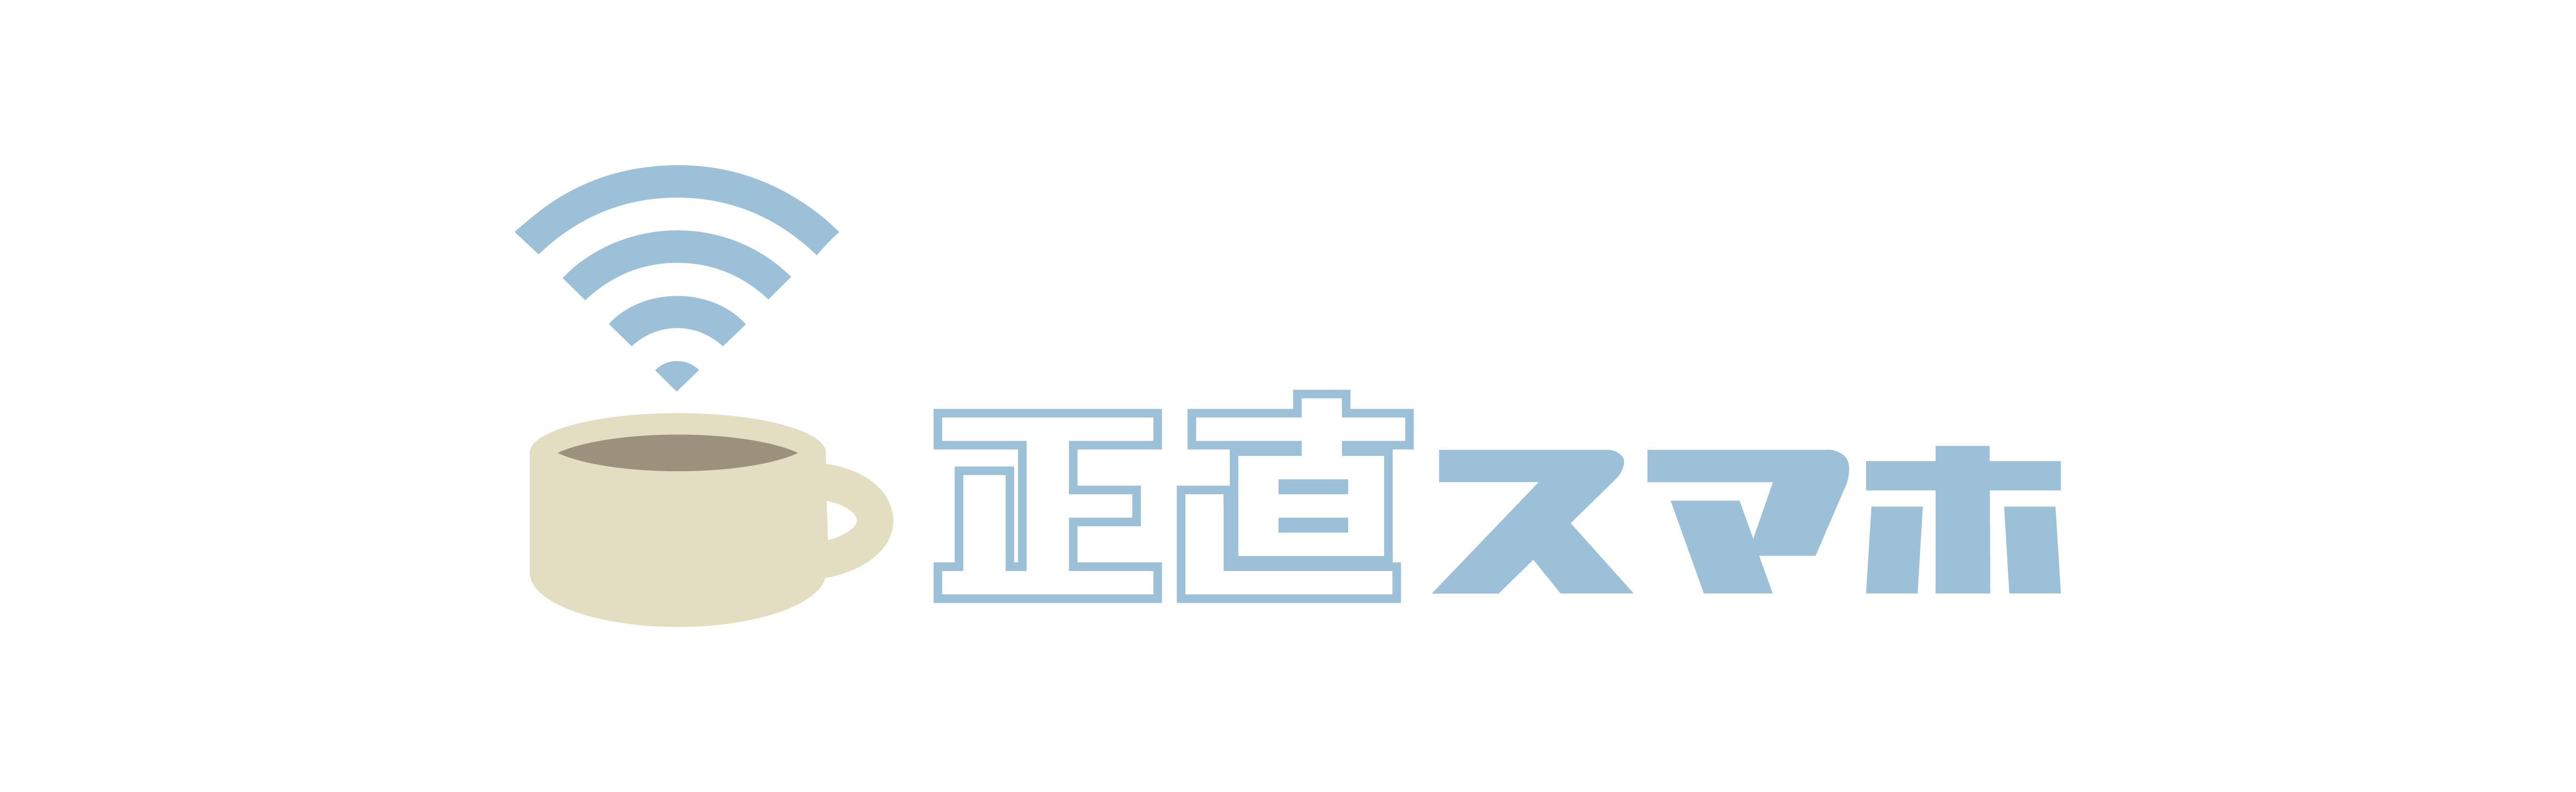 logo______-03.png